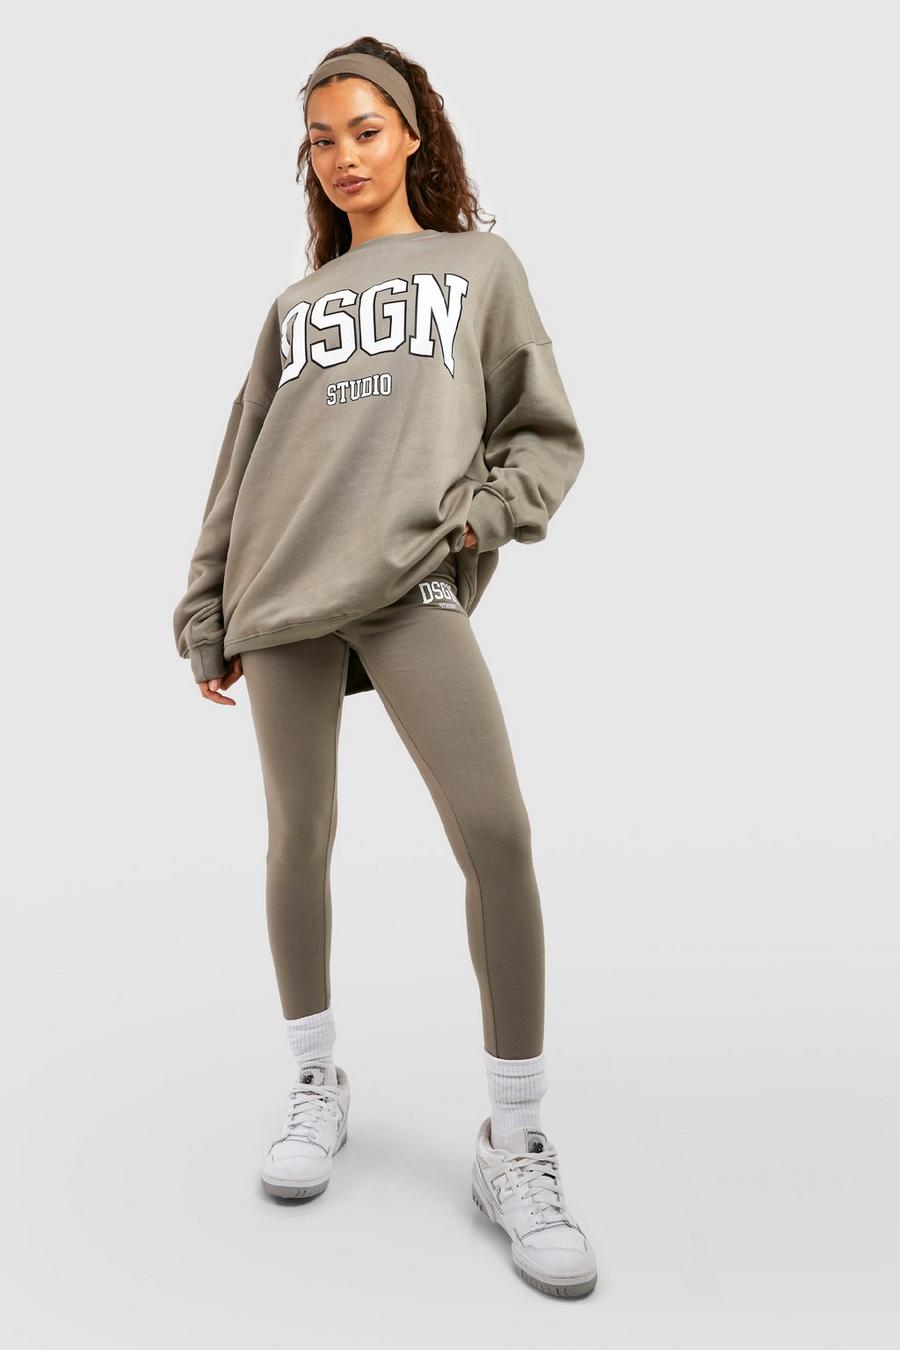 Chándal con leggings, sudadera y eslogan Collegiate Dsgn Studio